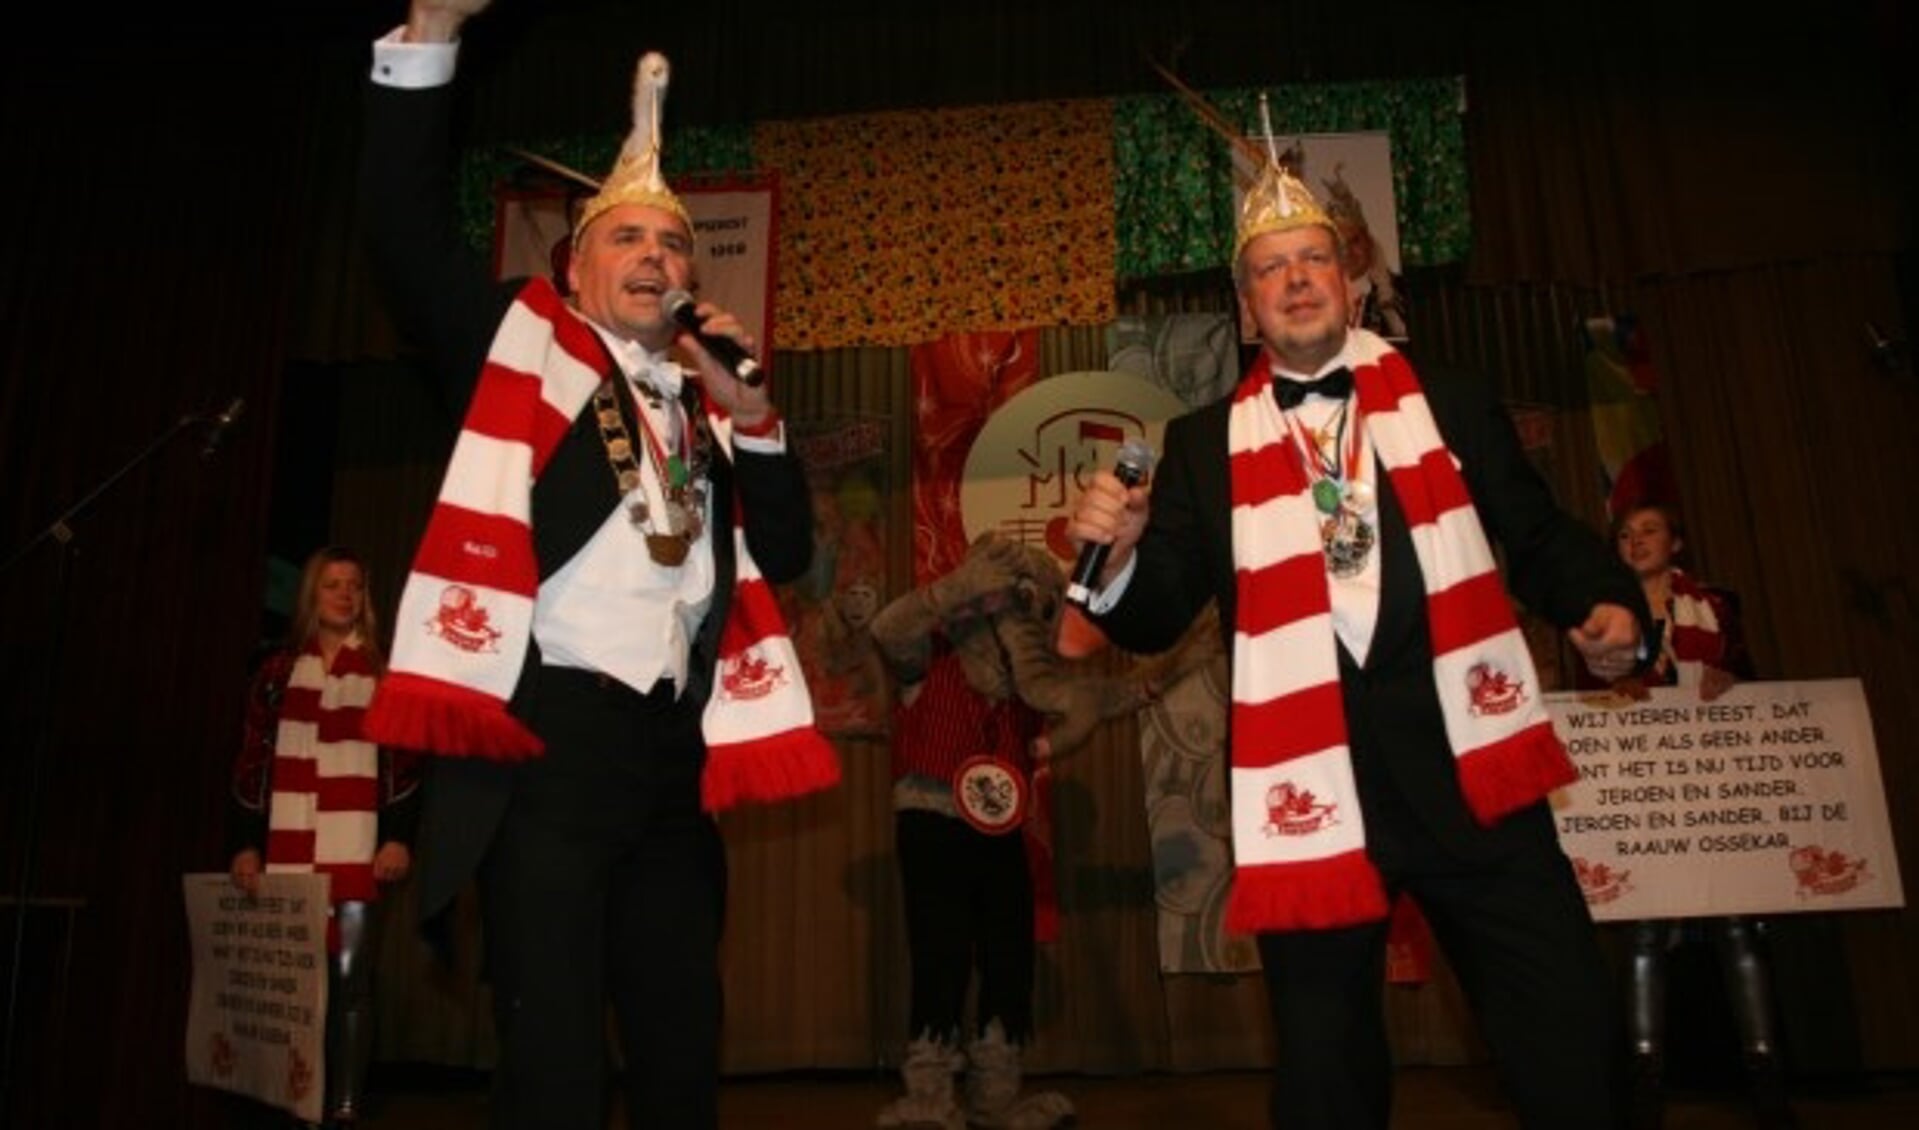 De winnaars van het Maaslands Carnavals Liedjes Festival (MCLF) in 2018.